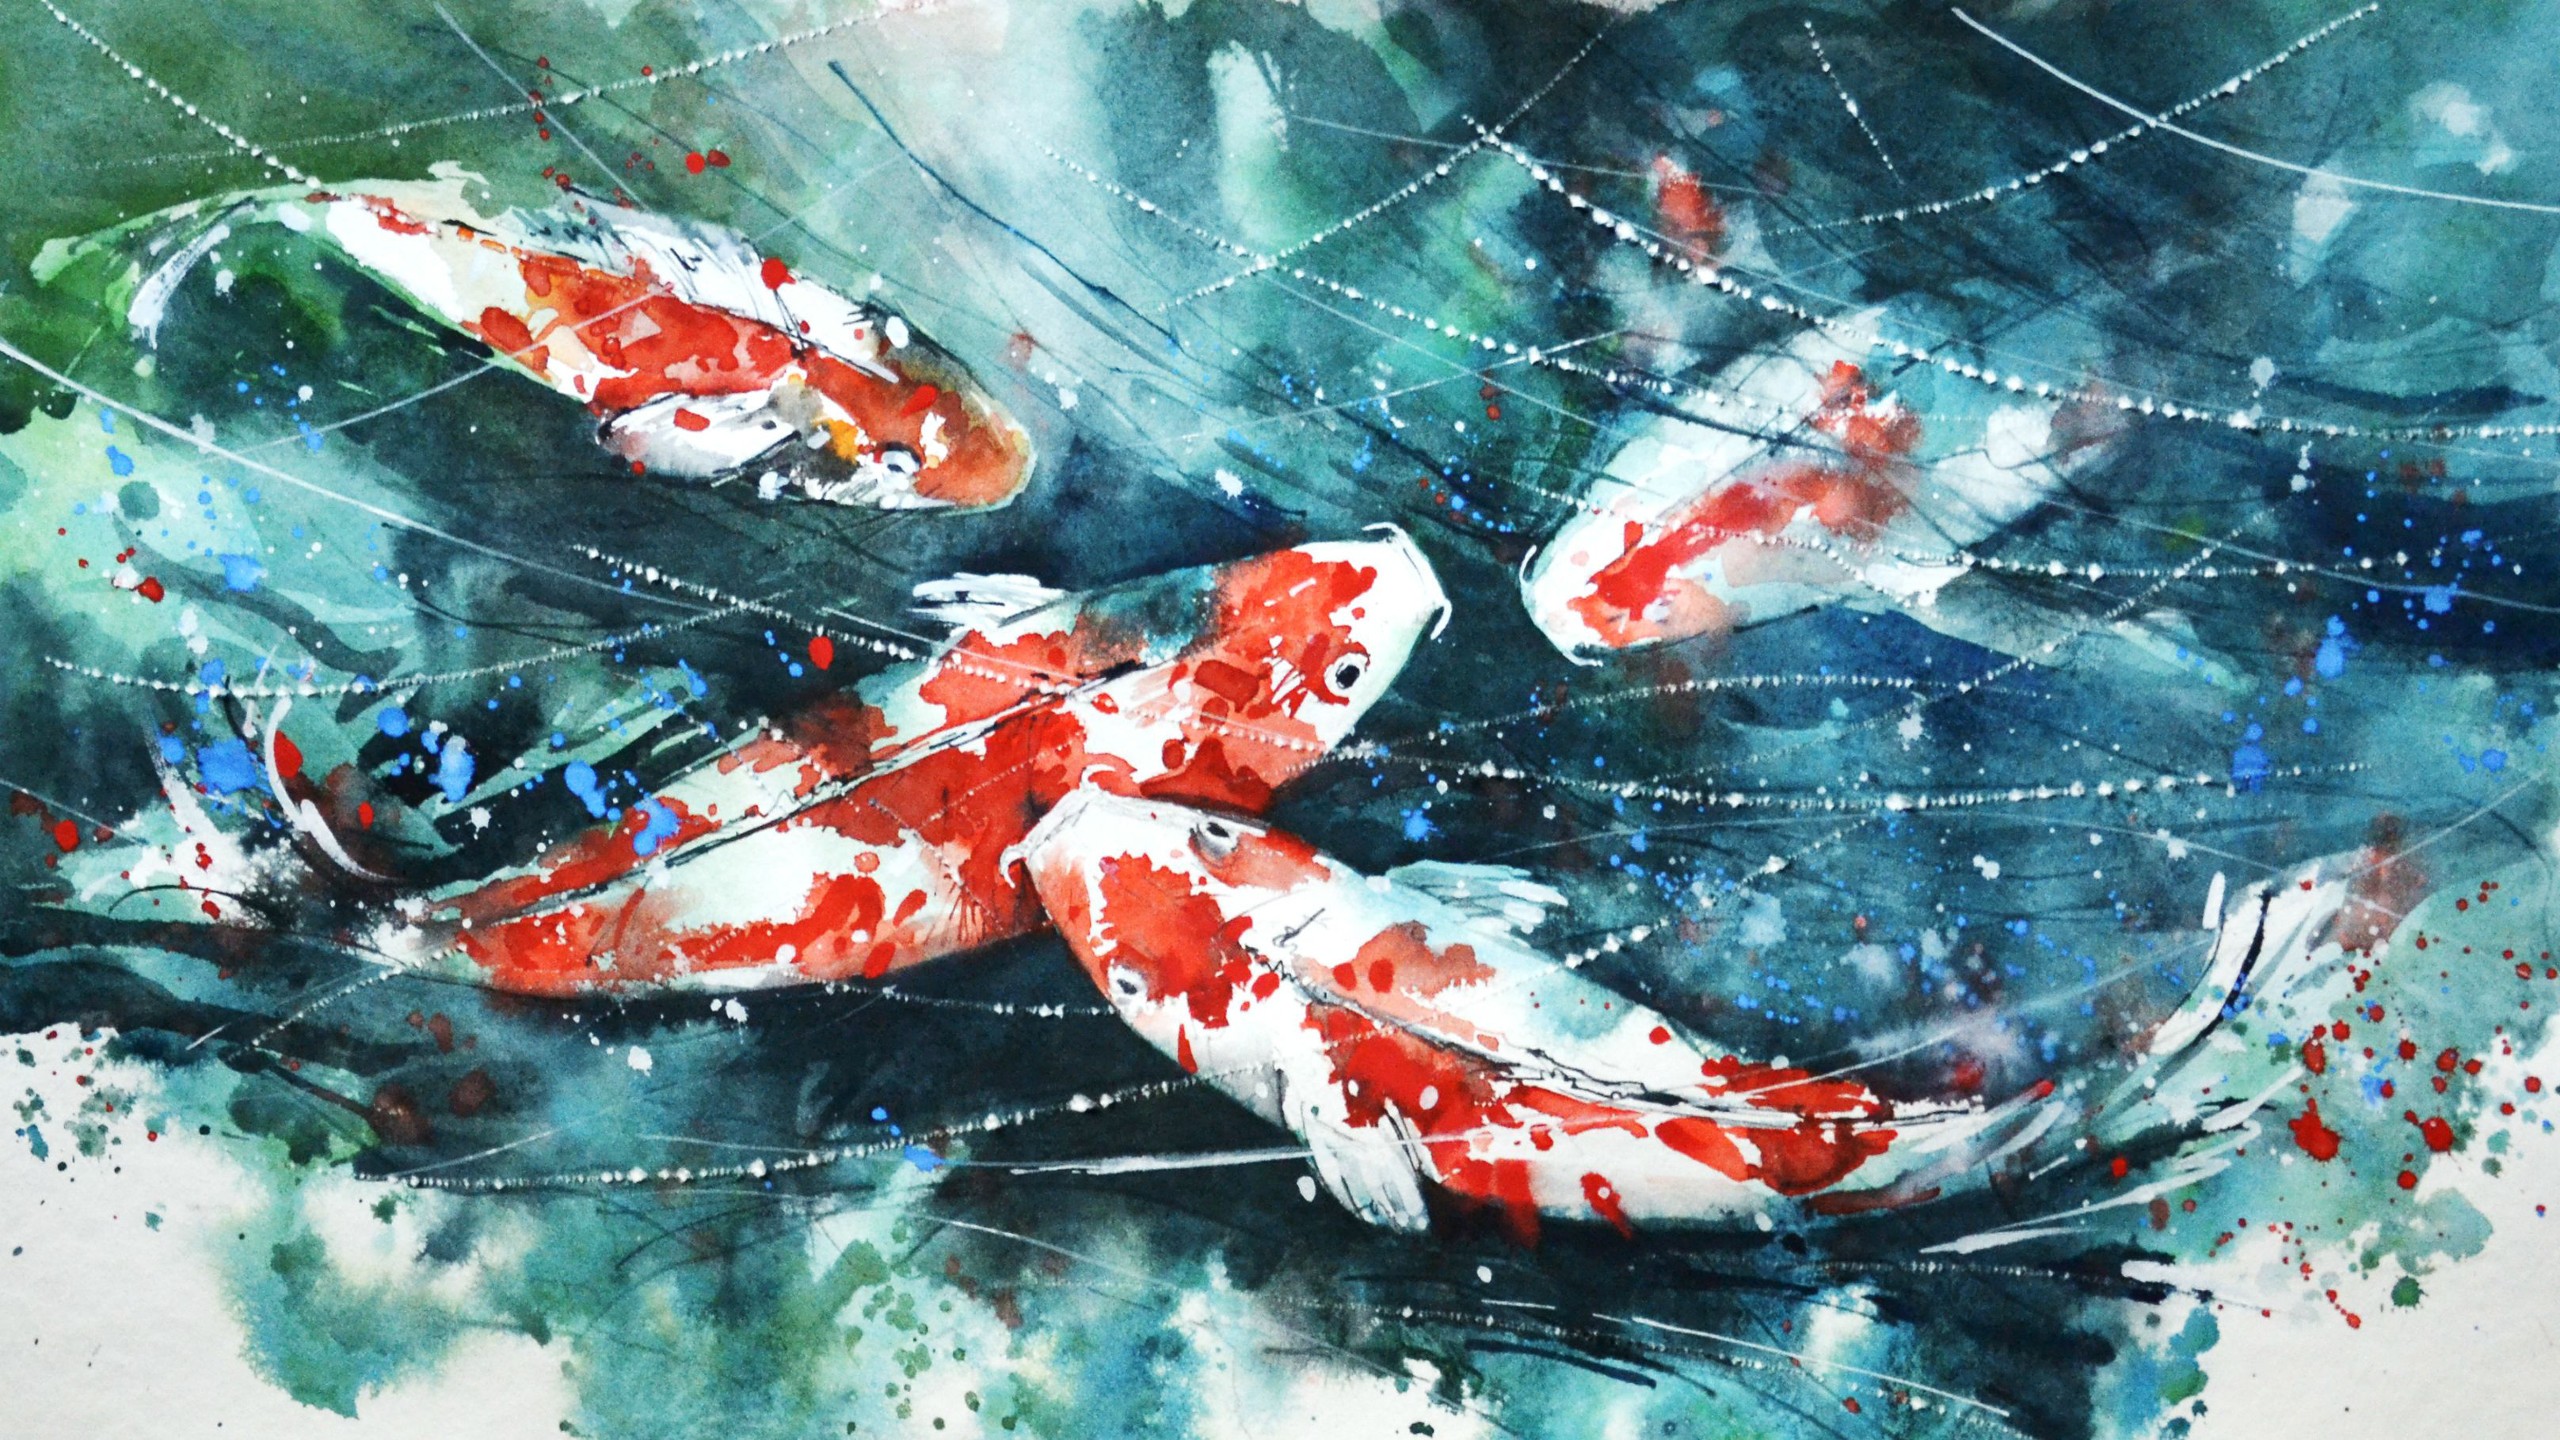 General 2560x1440 koi painting watercolor fish artwork paint splatter animals